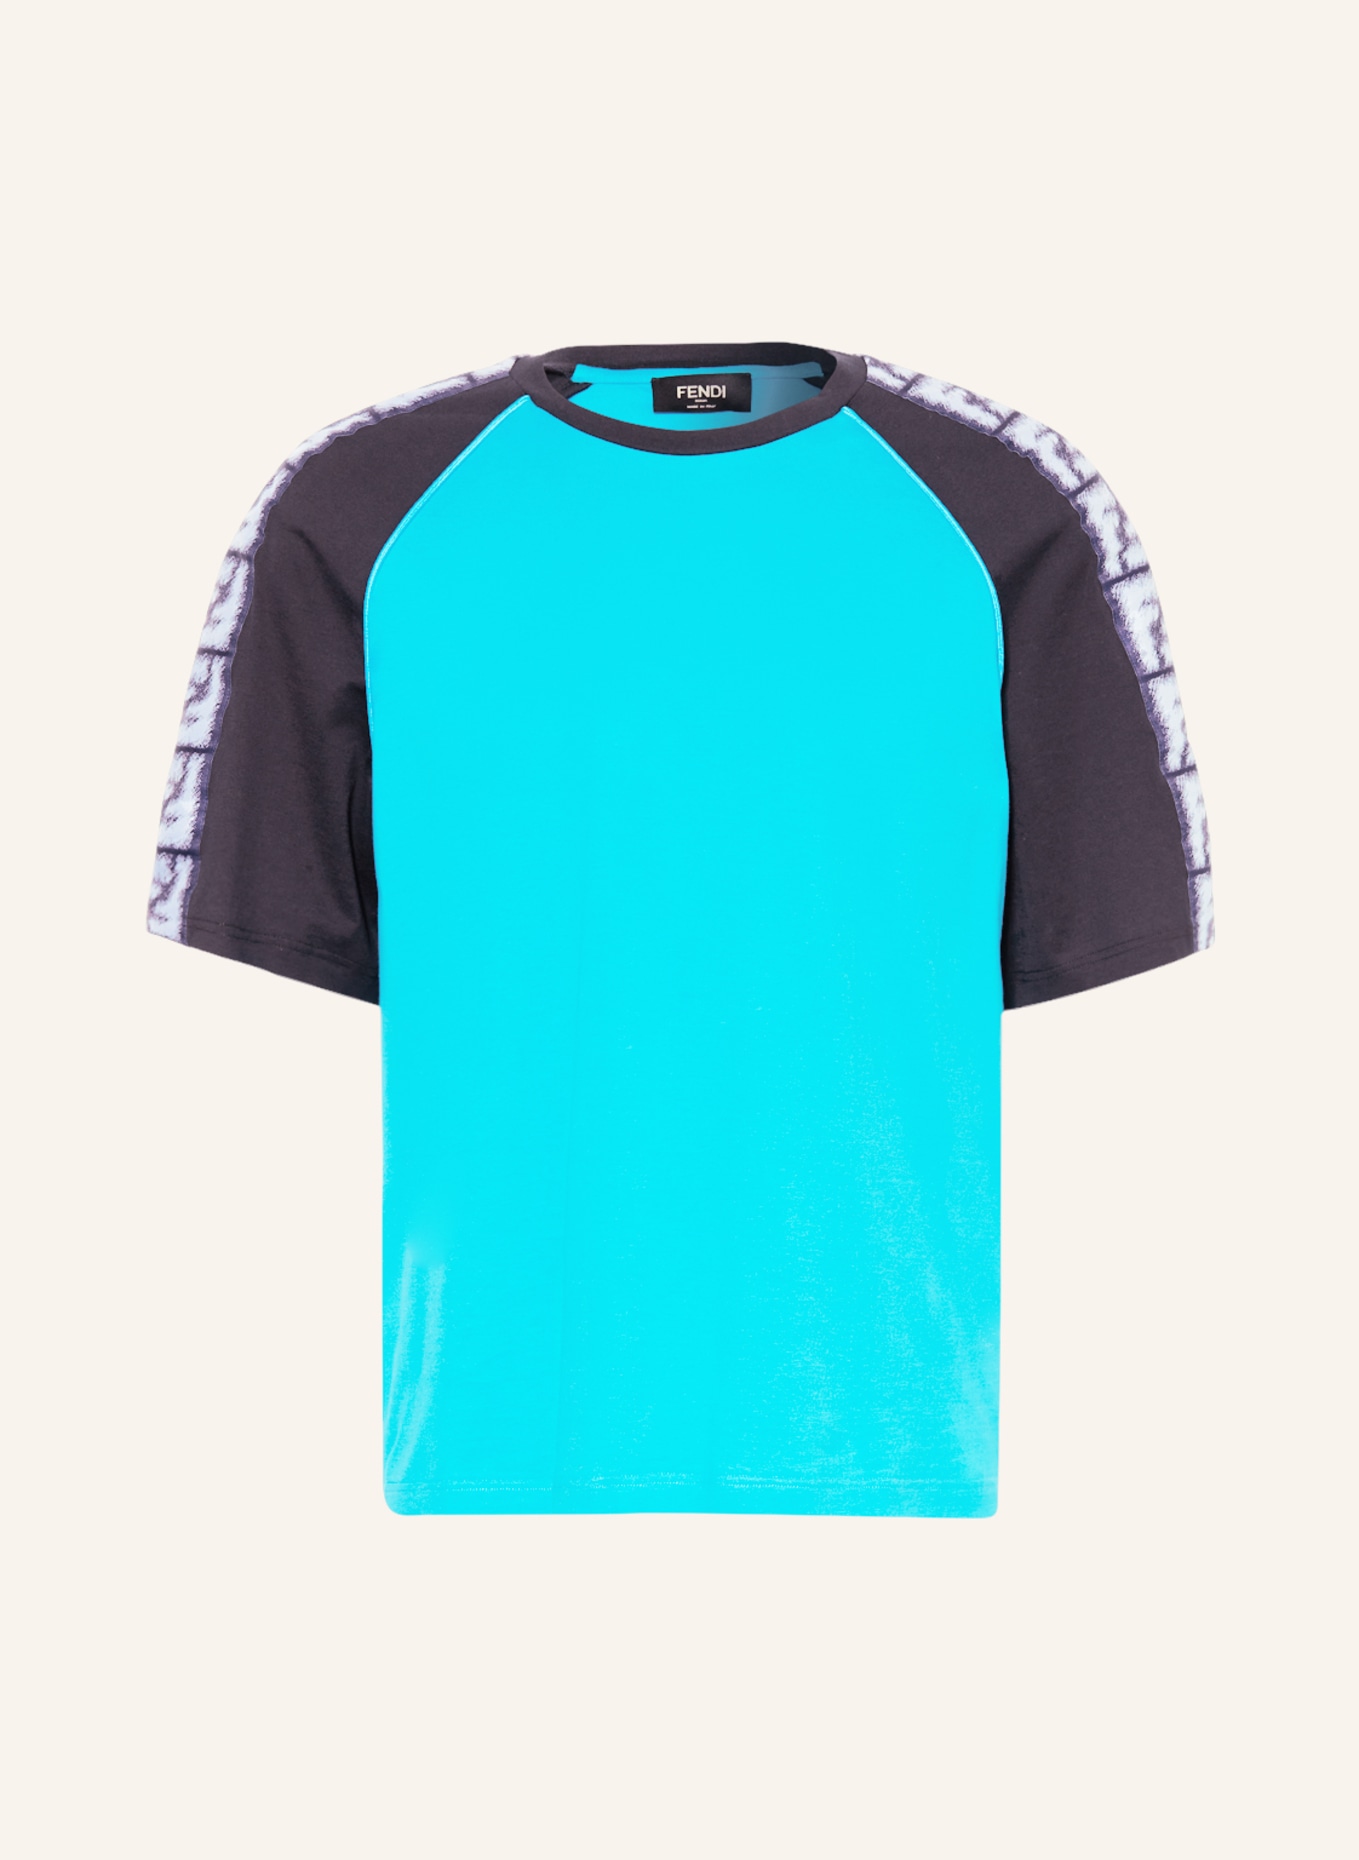 FENDI T-Shirt mit Galonstreifen, Farbe: NEONBLAU/ DUNKELBLAU/ WEISS (Bild 1)